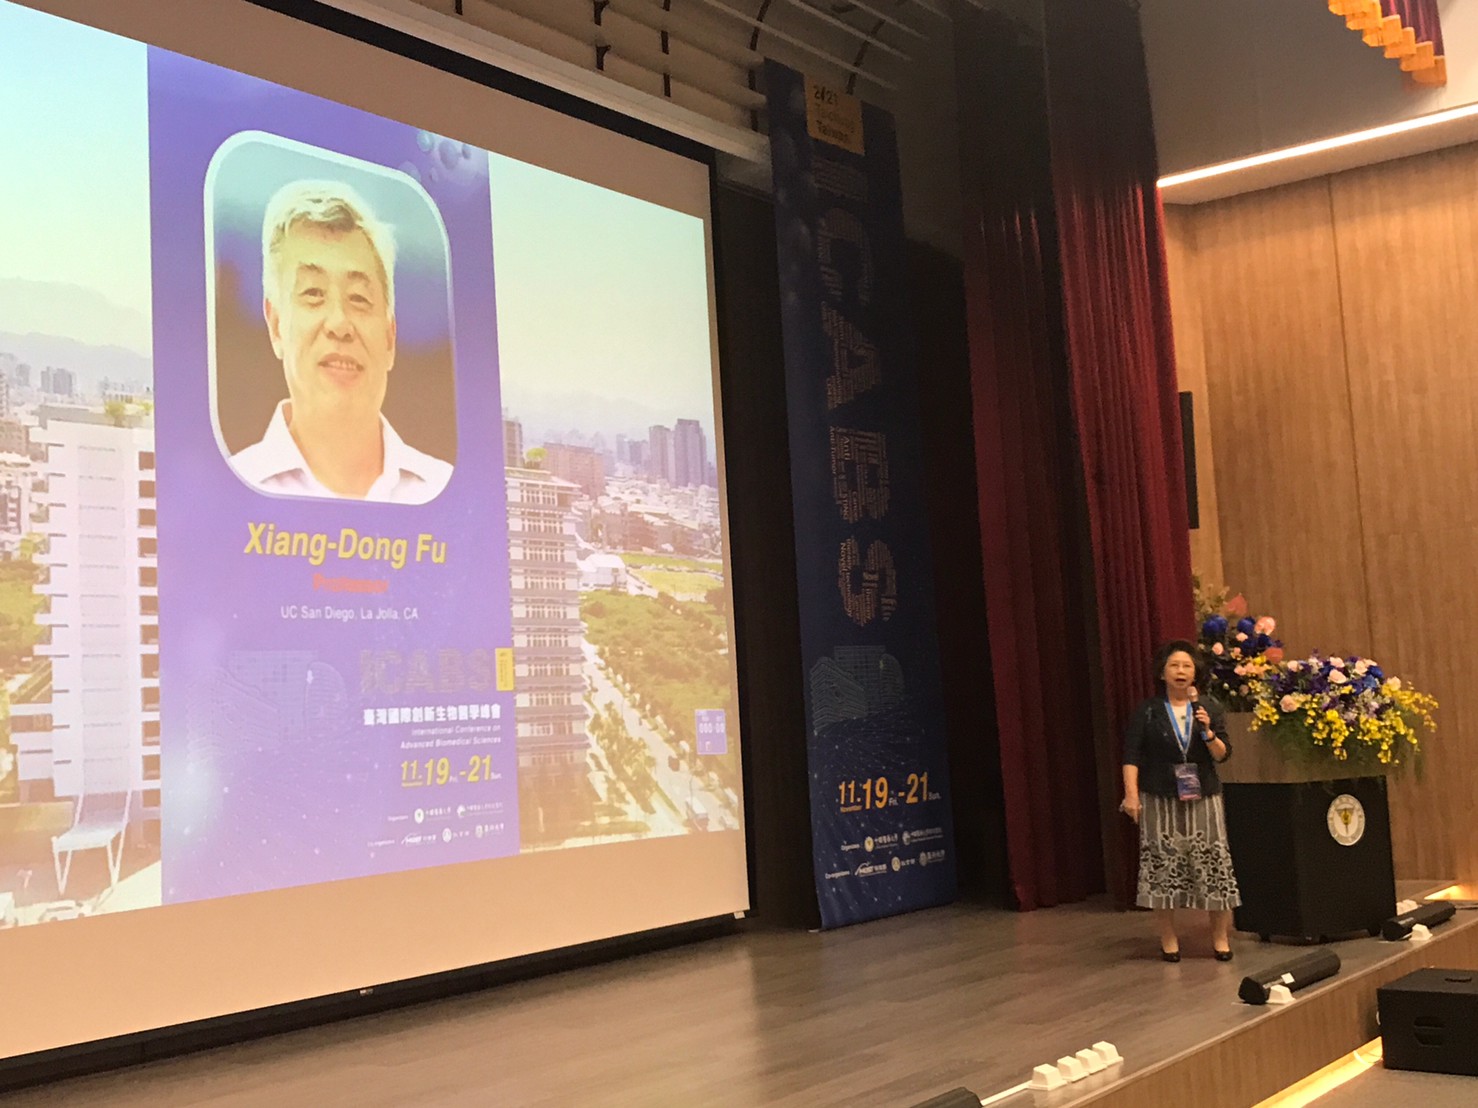 
	國際癌症頂尖學者Xiang-Dong Fu發表幹細胞演講
